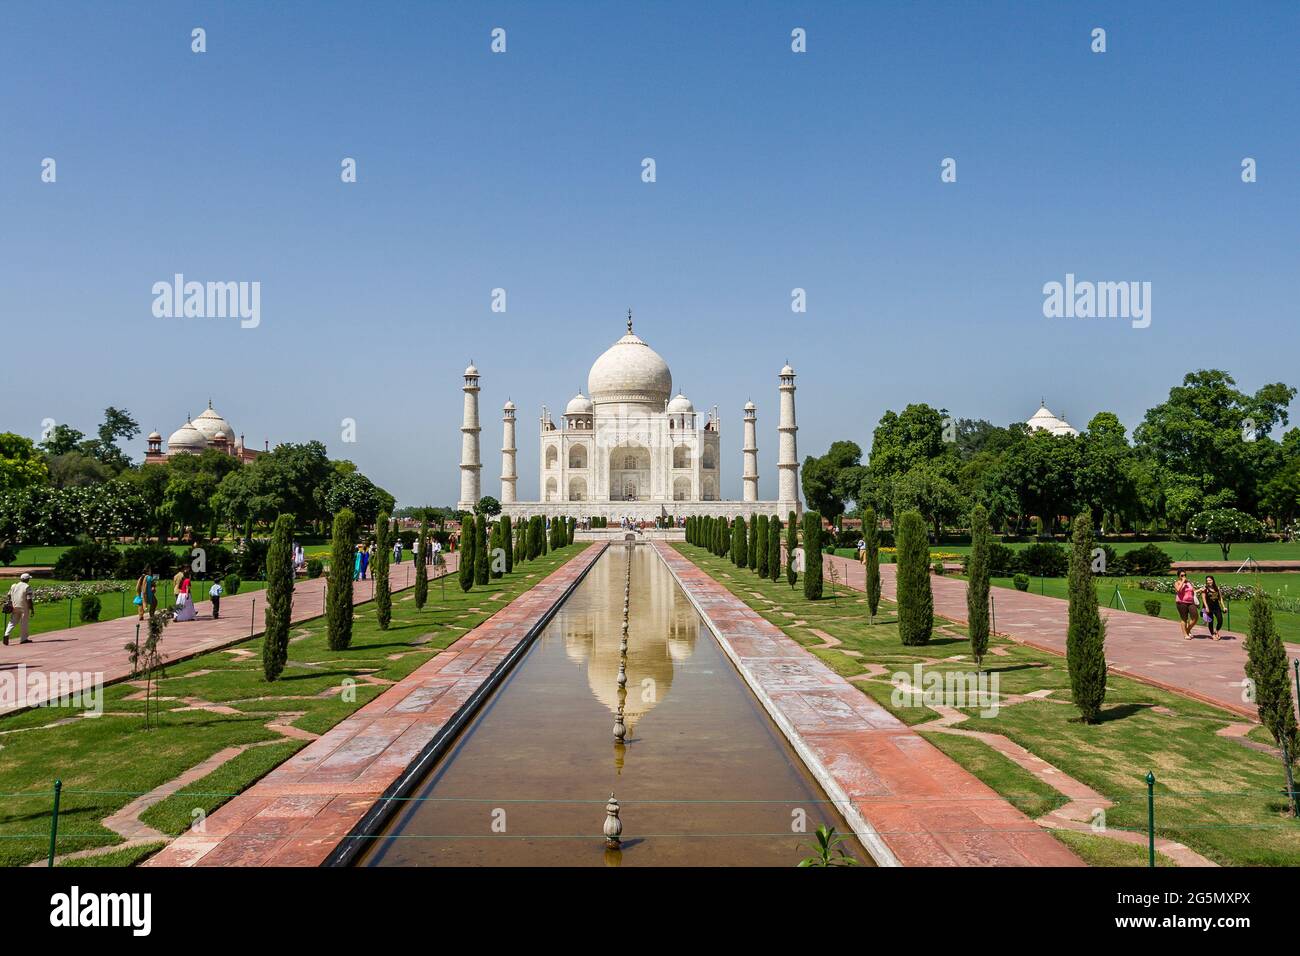 Taj Mahal Vorderansicht mit Yamuna River, Agra, Uttar Pradesh, Indien. UNESCO-Weltkulturerbe. Sieben Wunder der Welt Taj Mahal Stockfoto